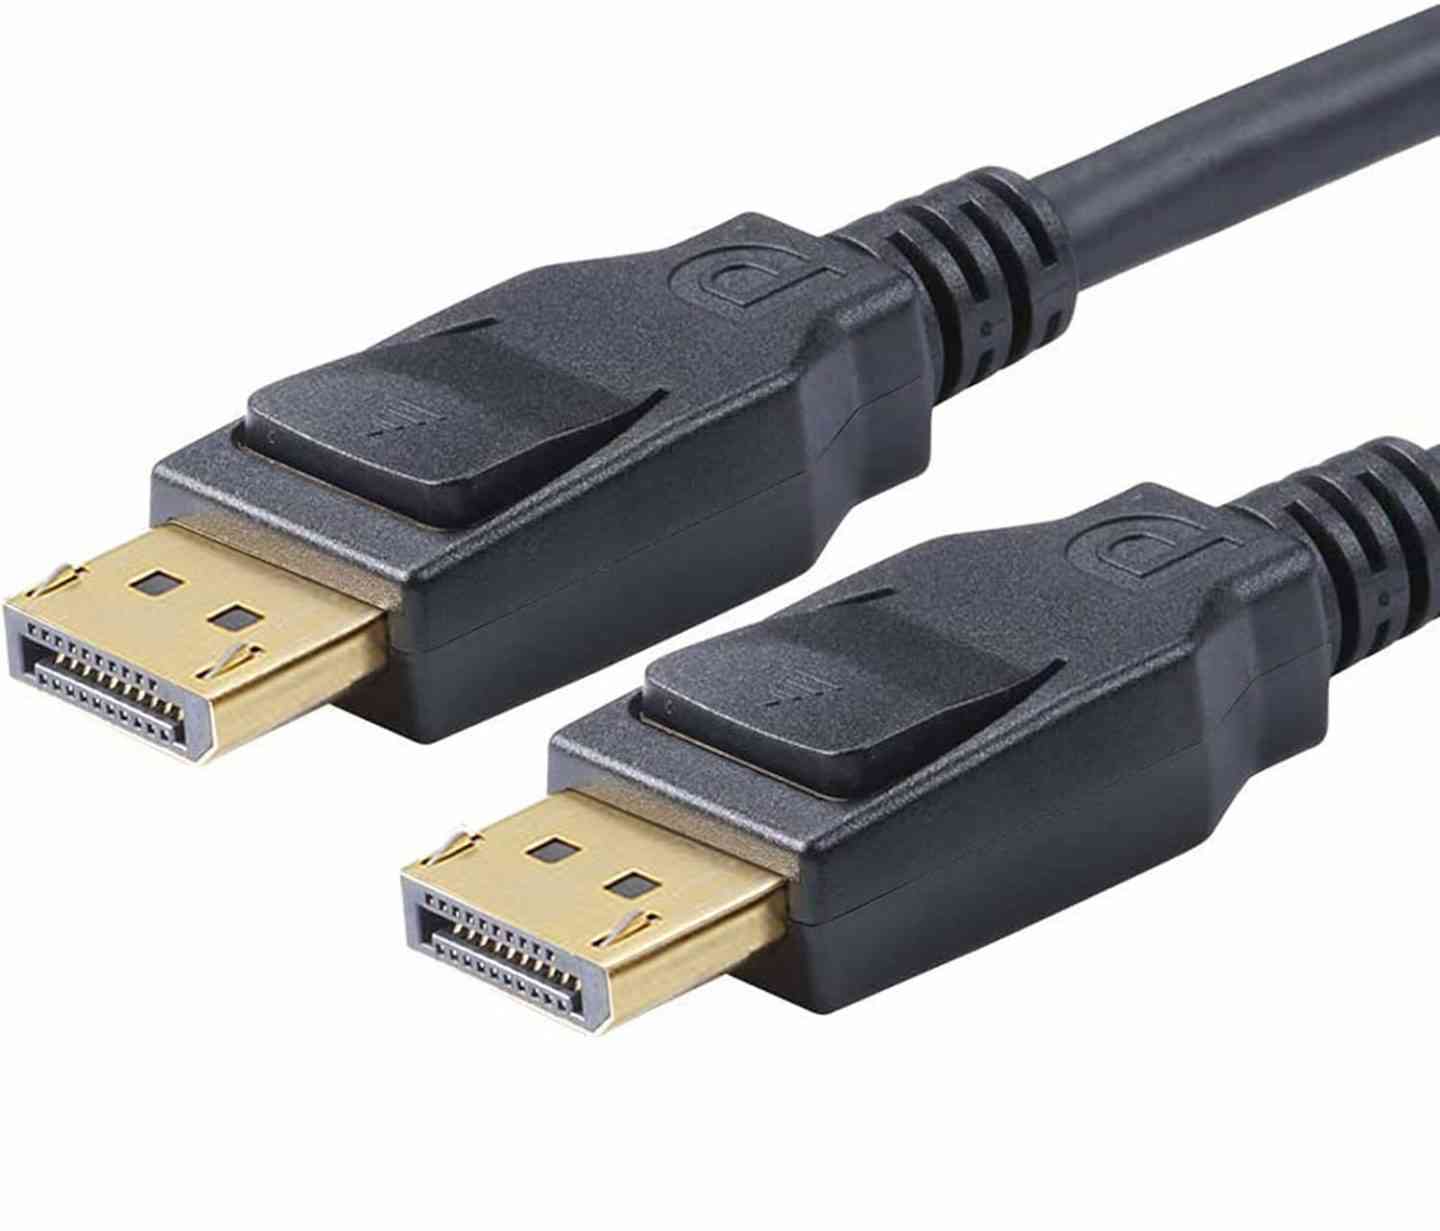 8K DisplayPort to DisplayPort 1.4 Cable, Display Port Cable 6ft, DP to DP Cable Cord with [1440P@144Hz, 1080P@240Hz, 4K@120Hz, 8K@60Hz] & HDR Support -Gold- Buy Online in Sri Lanka at desertcart.lk. ProductId :